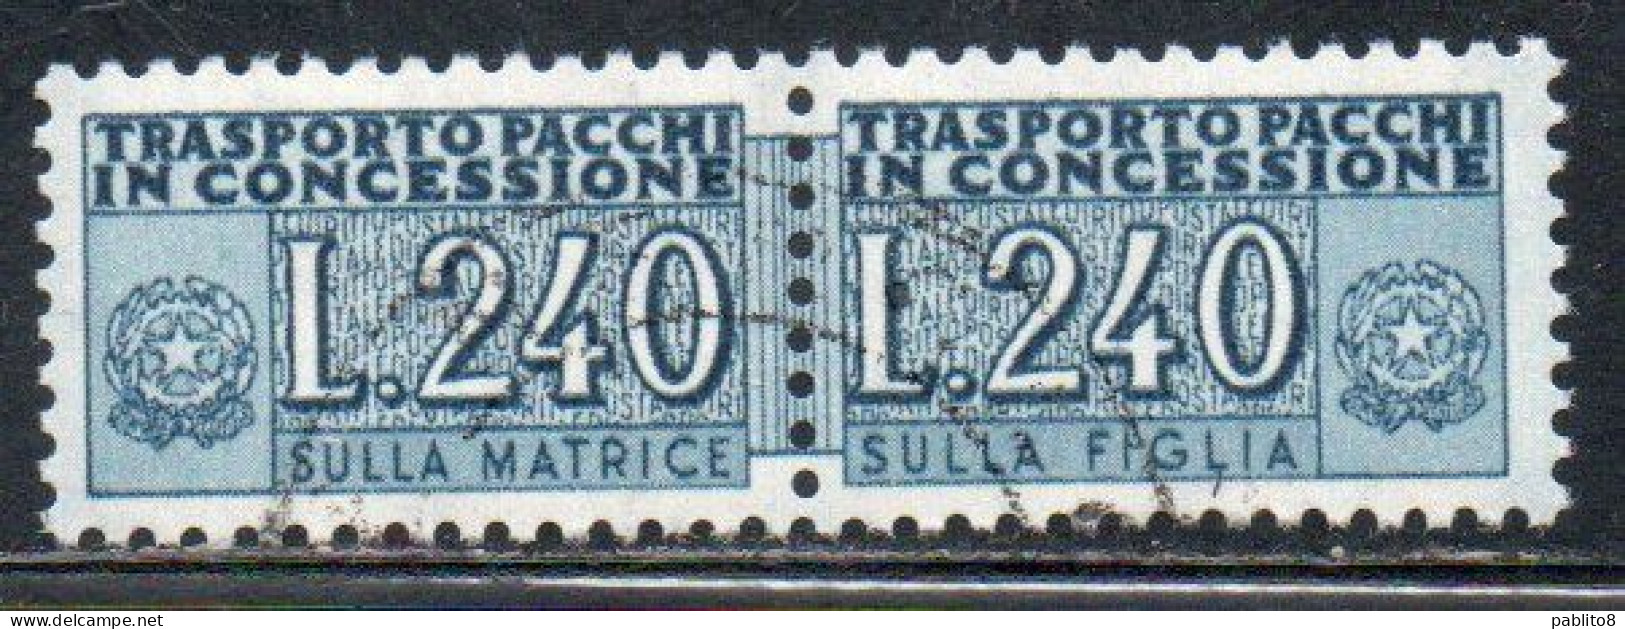 ITALIA REPUBBLICA ITALY REPUBLIC 1955 1981 PACCHI IN CONCESSIONE PARCEL POST STELLE STARS 1966 LIRE 240 USATO USED - Consigned Parcels